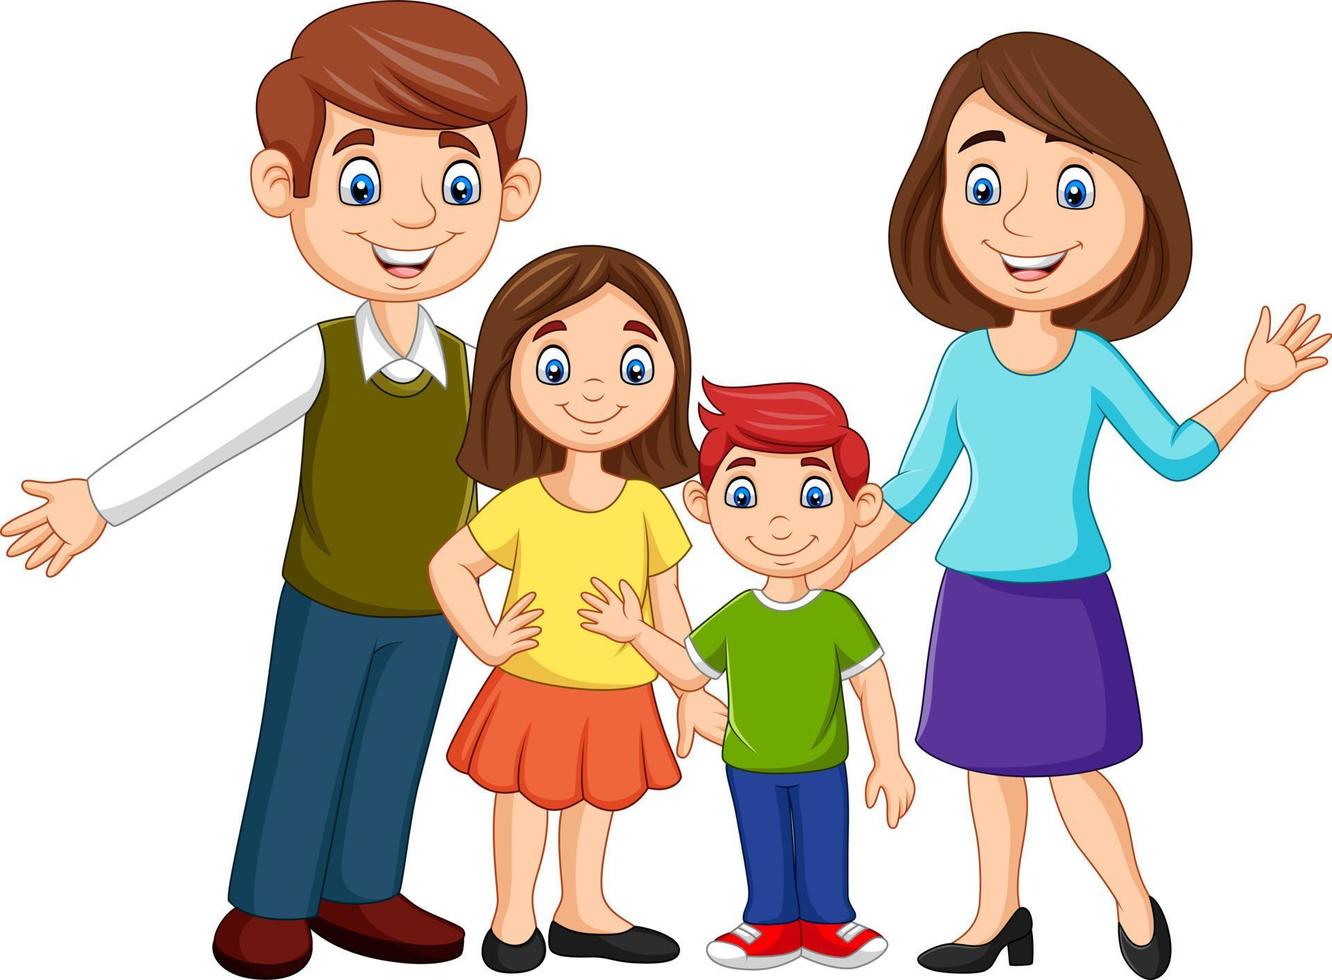 Cartoon glückliche Familie auf weißem Hintergrund vektor